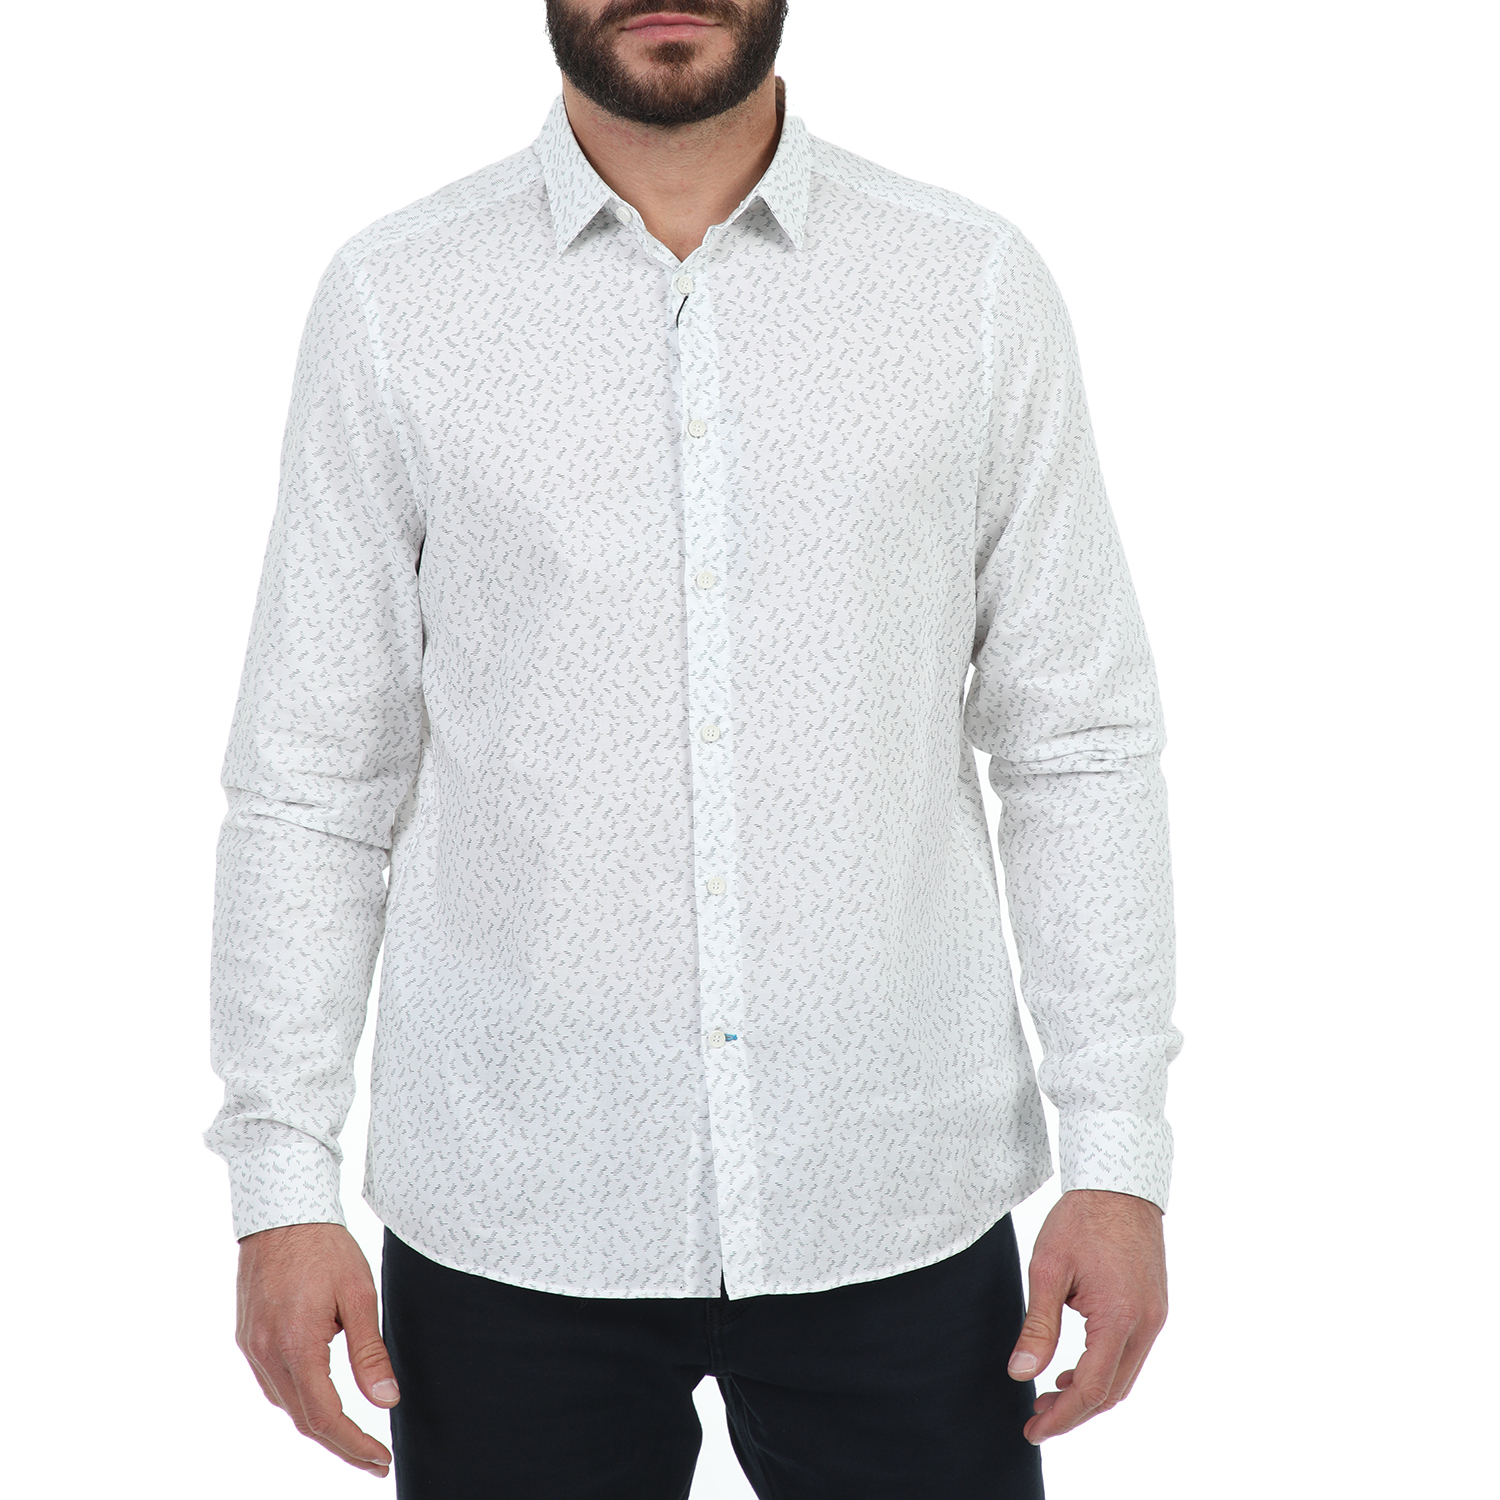 Ανδρικά/Ρούχα/Πουκάμισα/Μακρυμάνικα CK - Ανδρικό πουκάμισο CK GILLICE MICRO PAINT λευκό